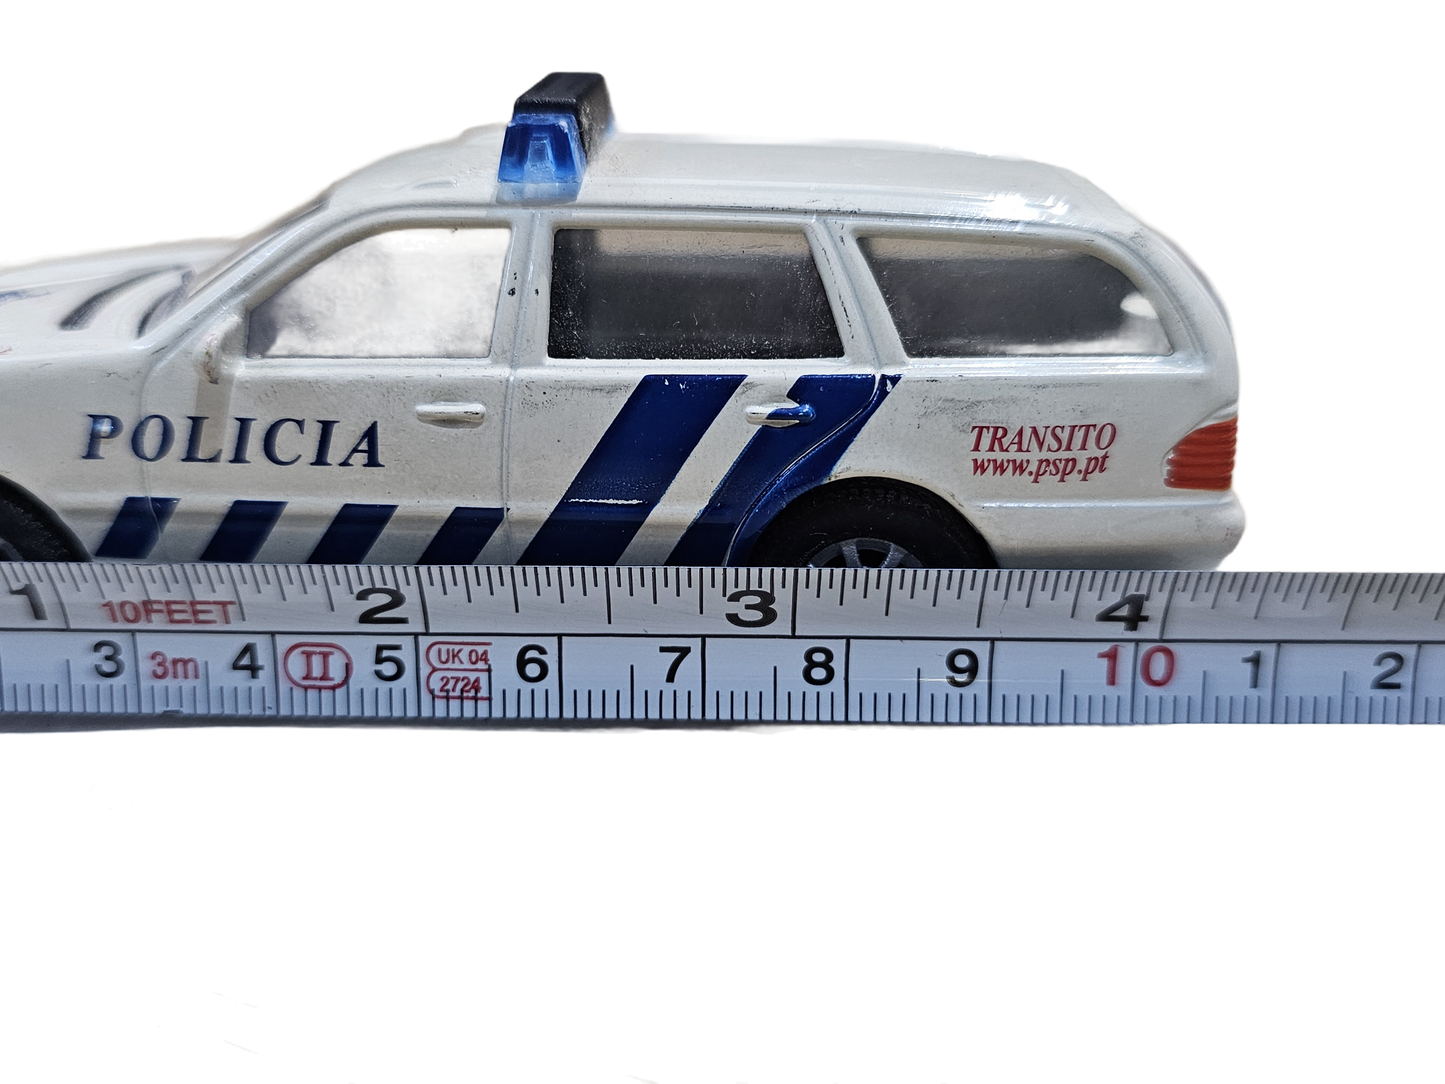 Diecast Model Car Mercedes-Benz Policia Portugal - USADO